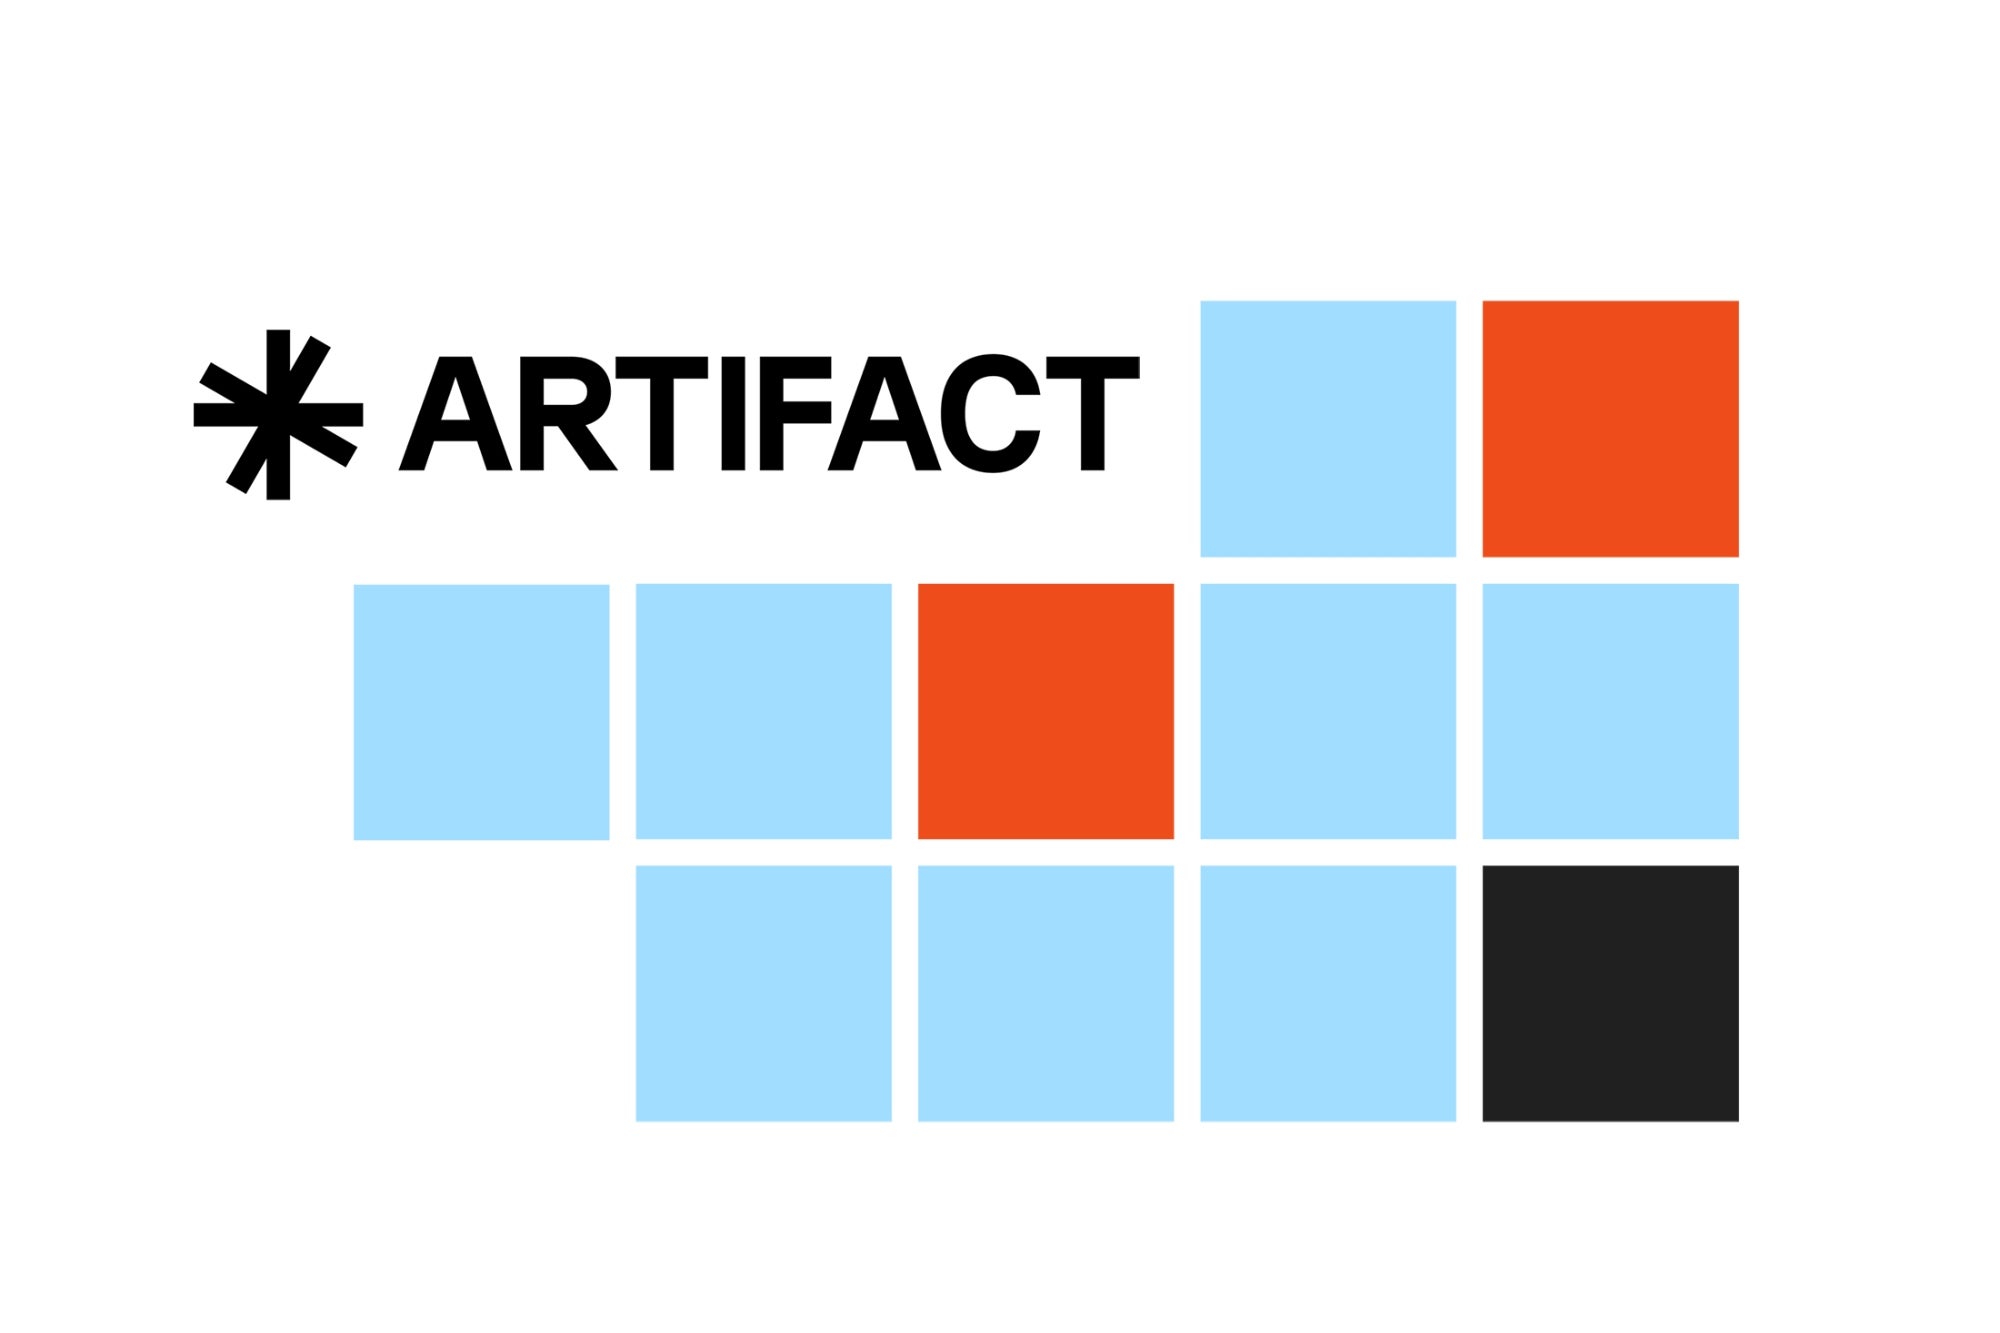 米国のニュースキュレーションアプリ「Artifact」、ローンチ1年でサービス終了へ